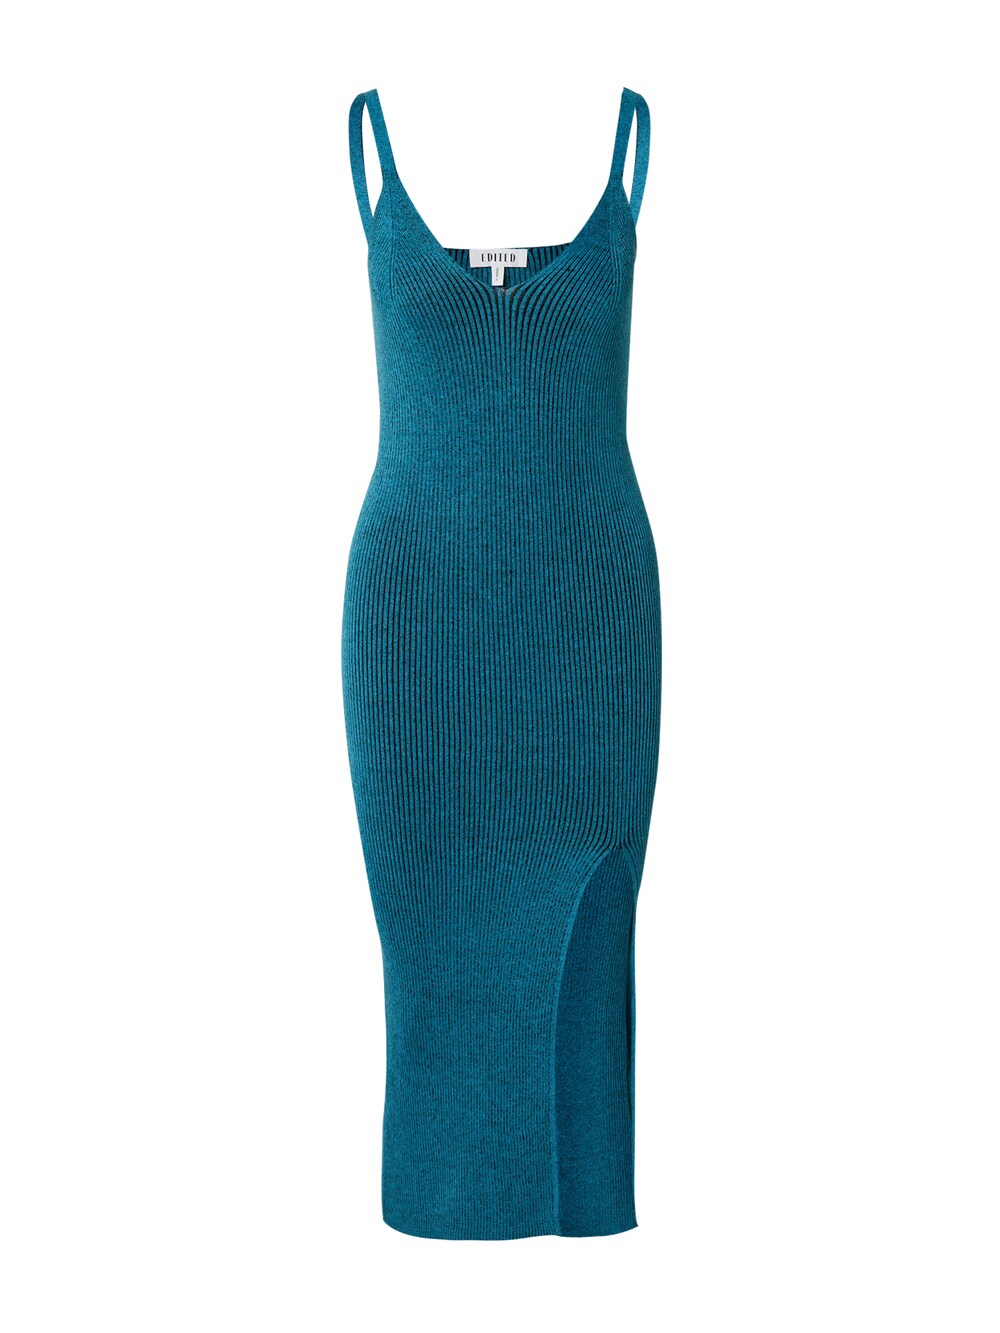 Вязанное платье Edited Qiara, синий